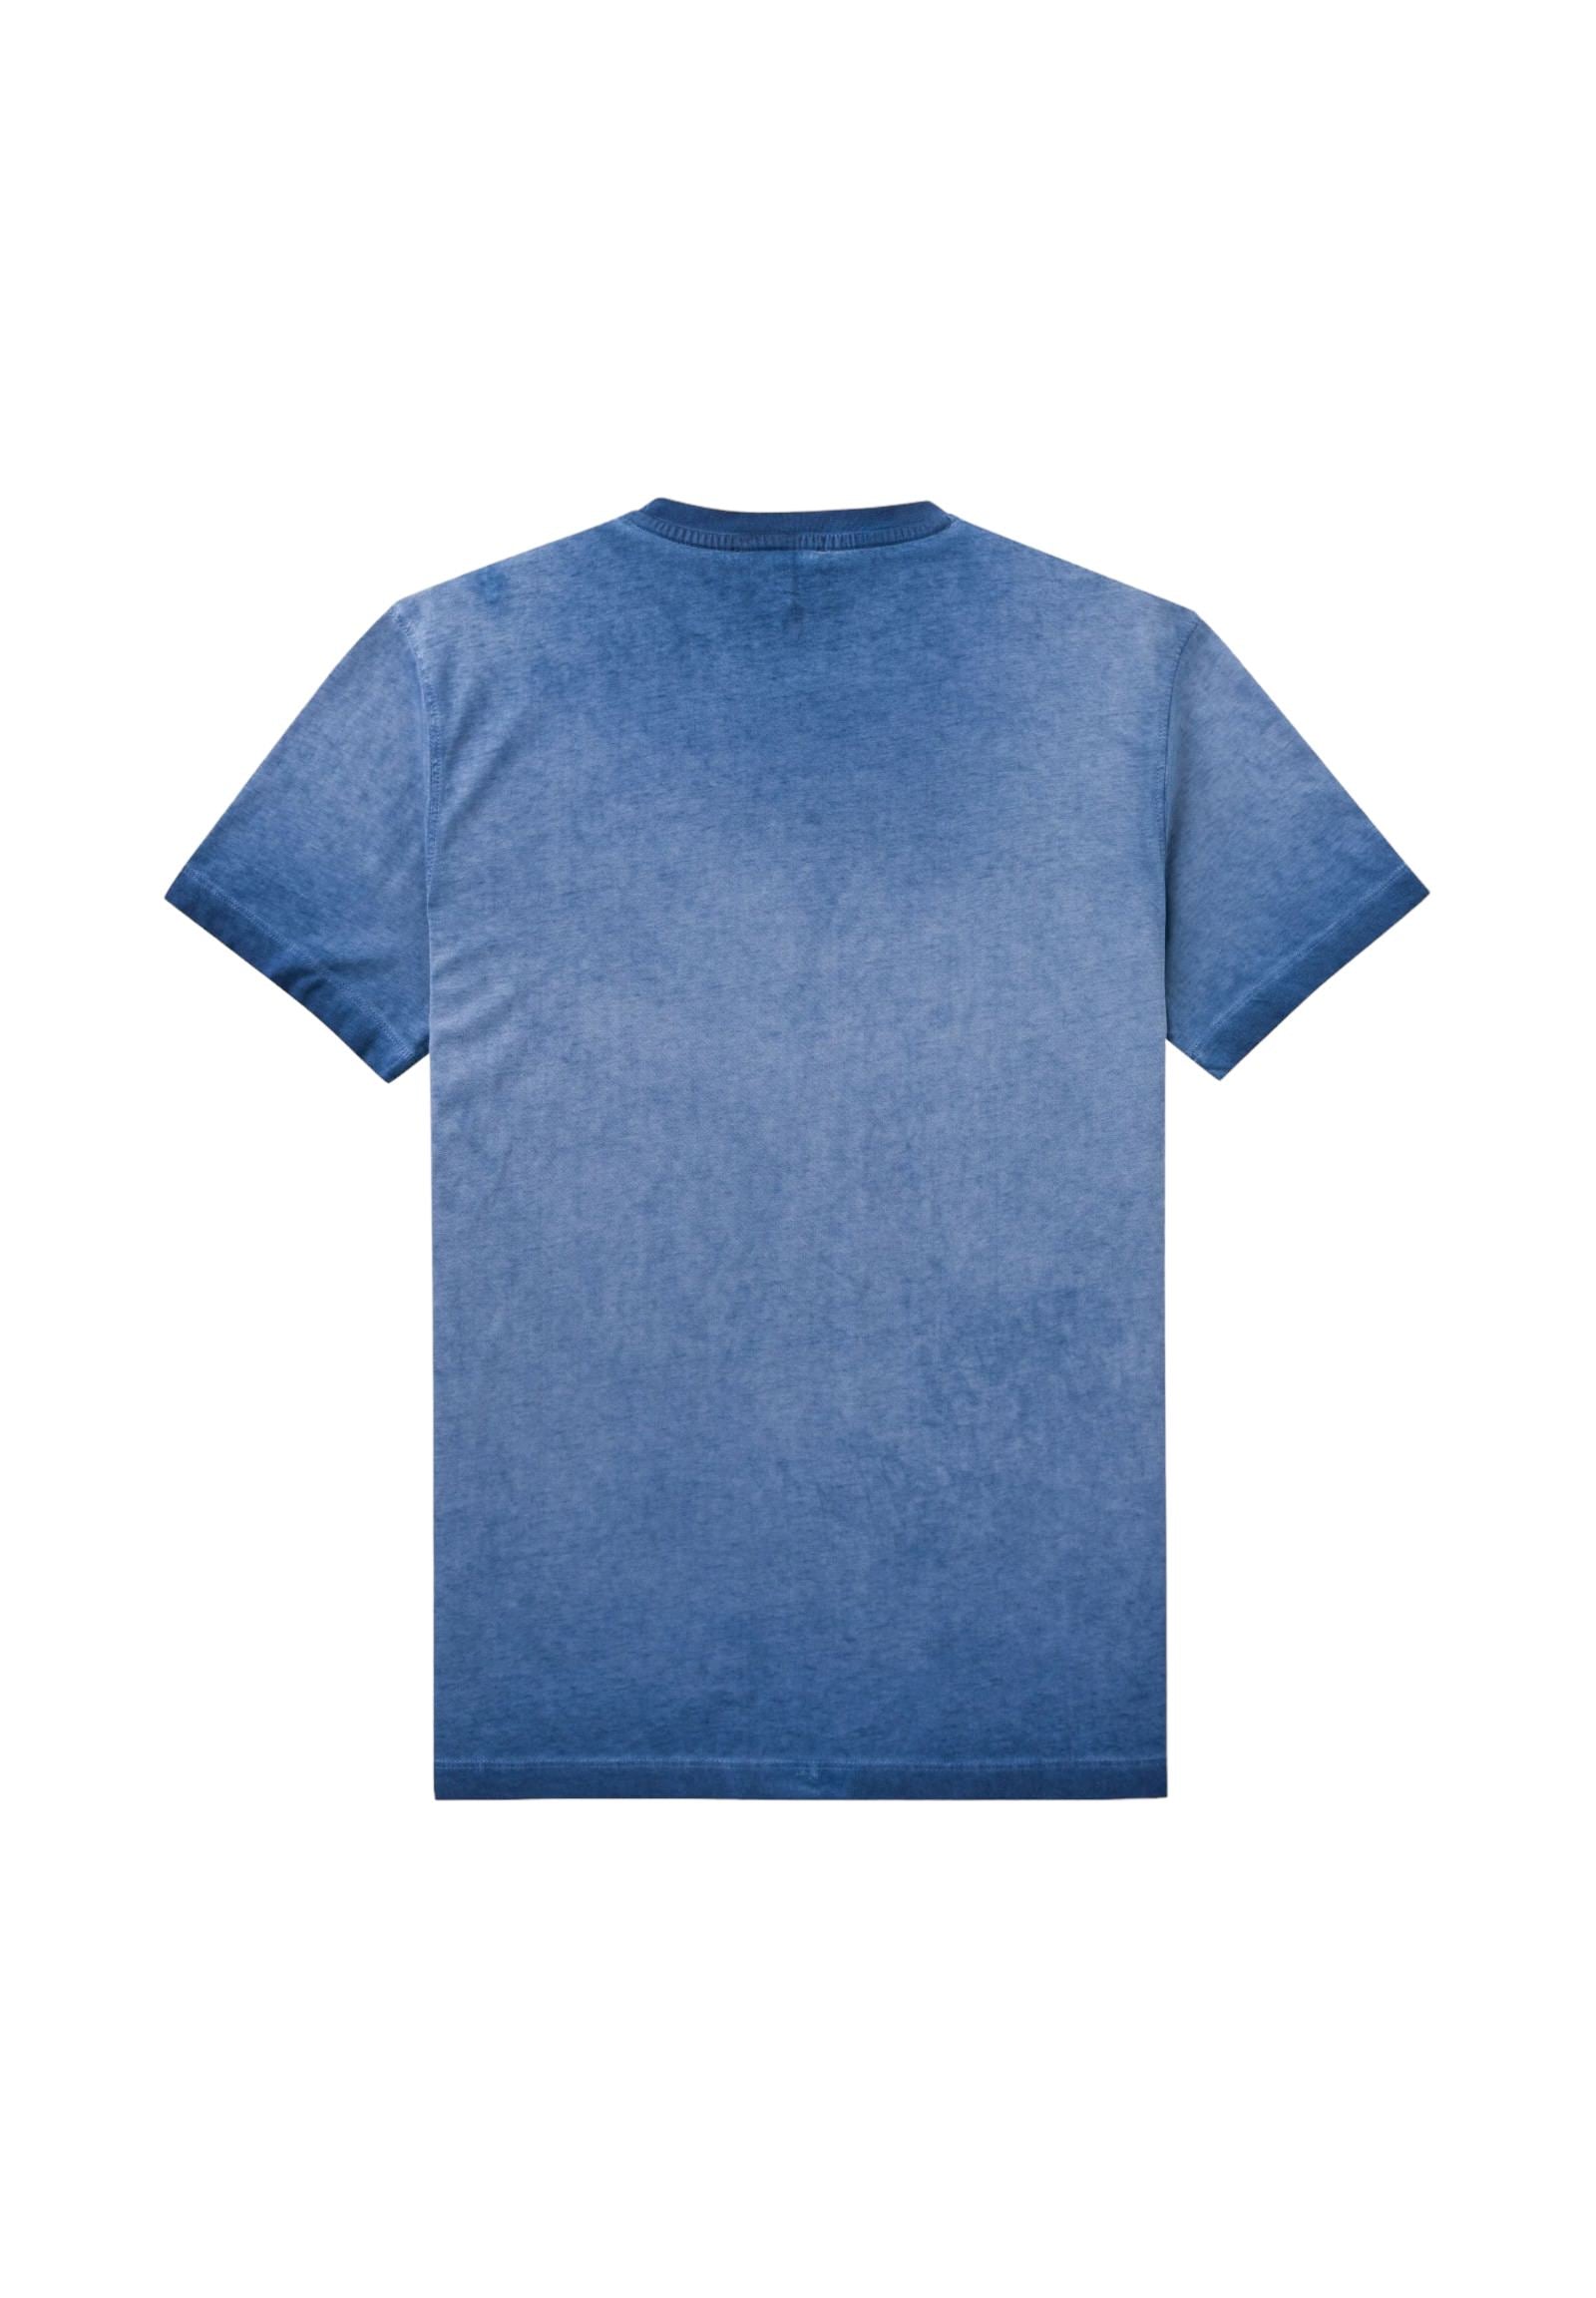 T-Shirt 10mts014-02308 Light Navy